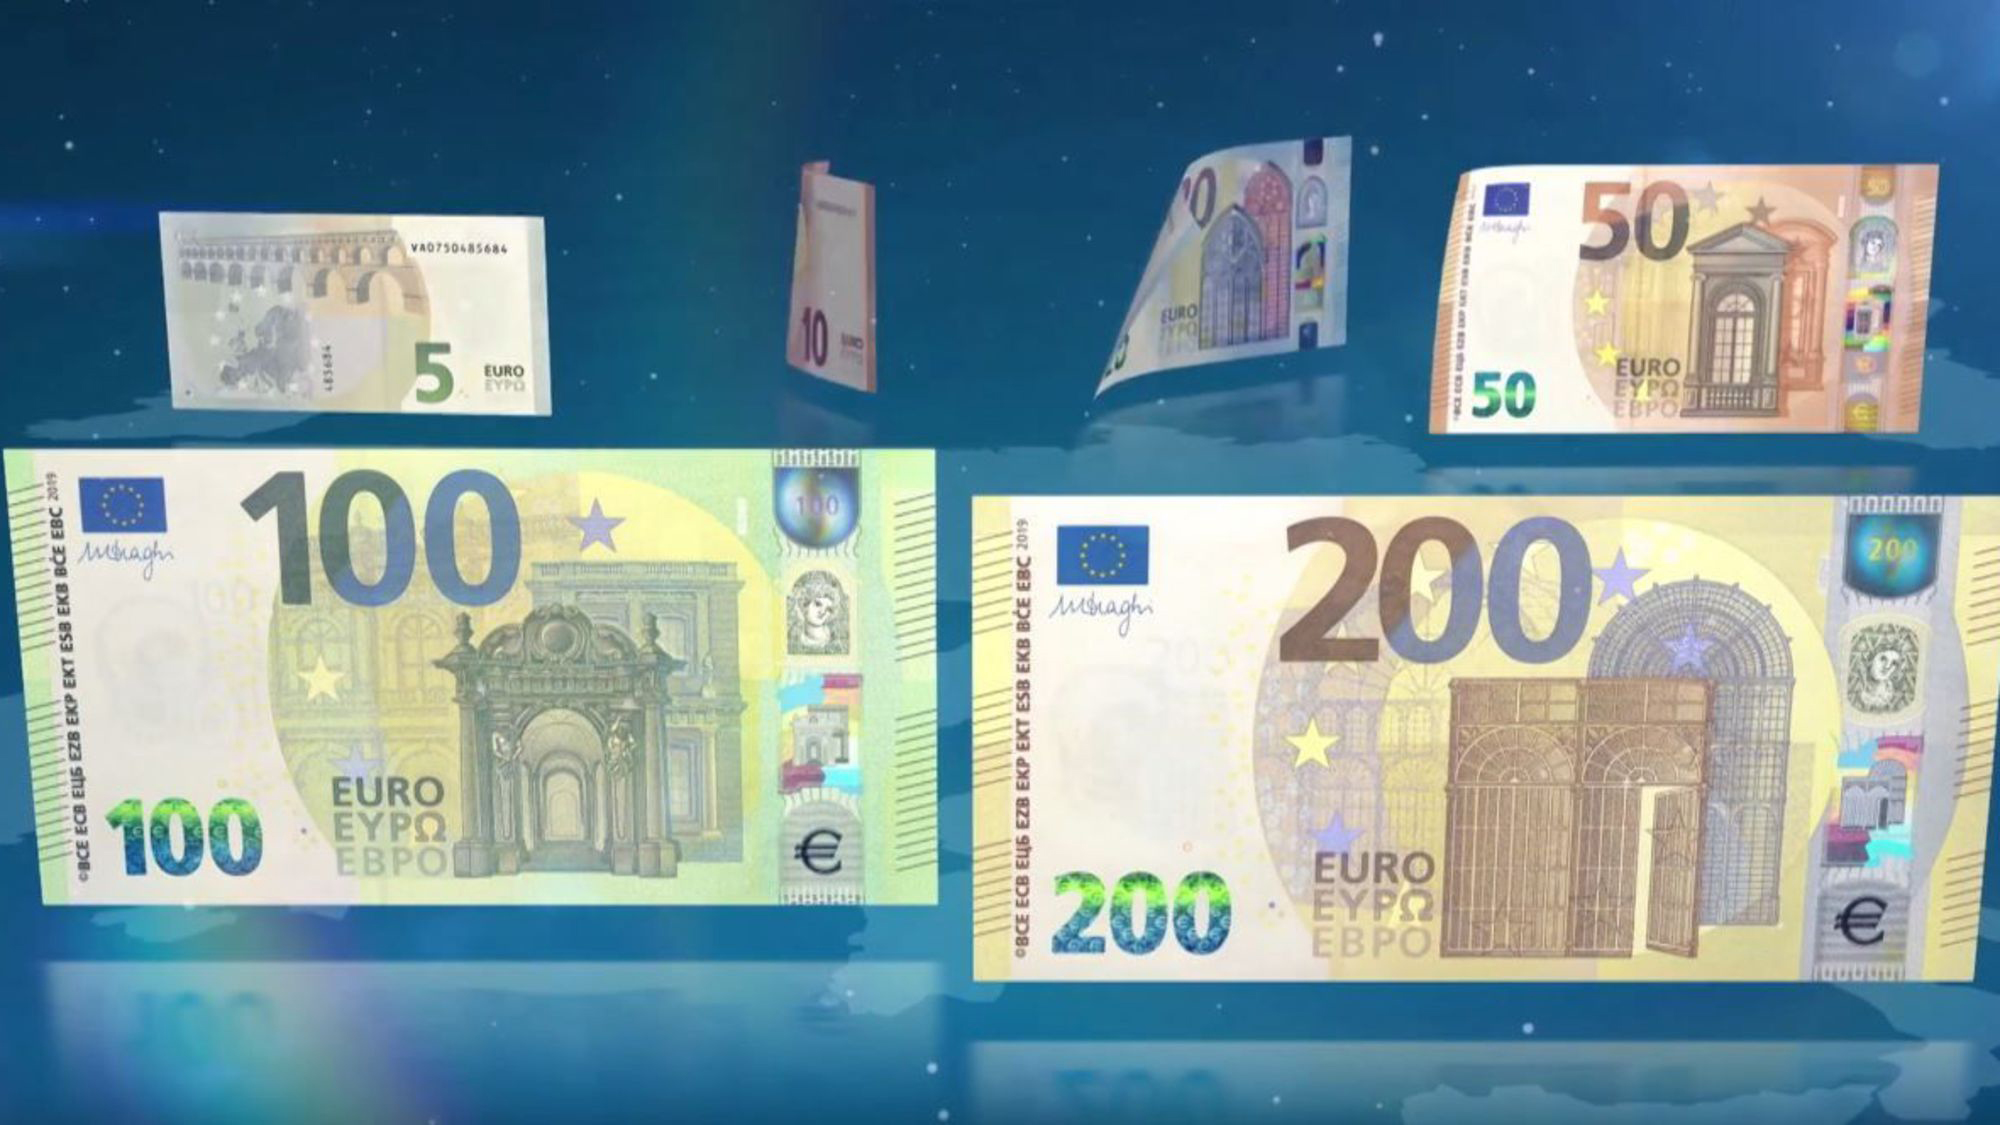 Tiền giấy euro là loại tiền được phát hành rộng rãi trên toàn cầu, với nhiều giá trị khác nhau. Nếu bạn tò mò về tiền giấy euro và cách thức sử dụng, hãy xem ngay hình ảnh liên quan.